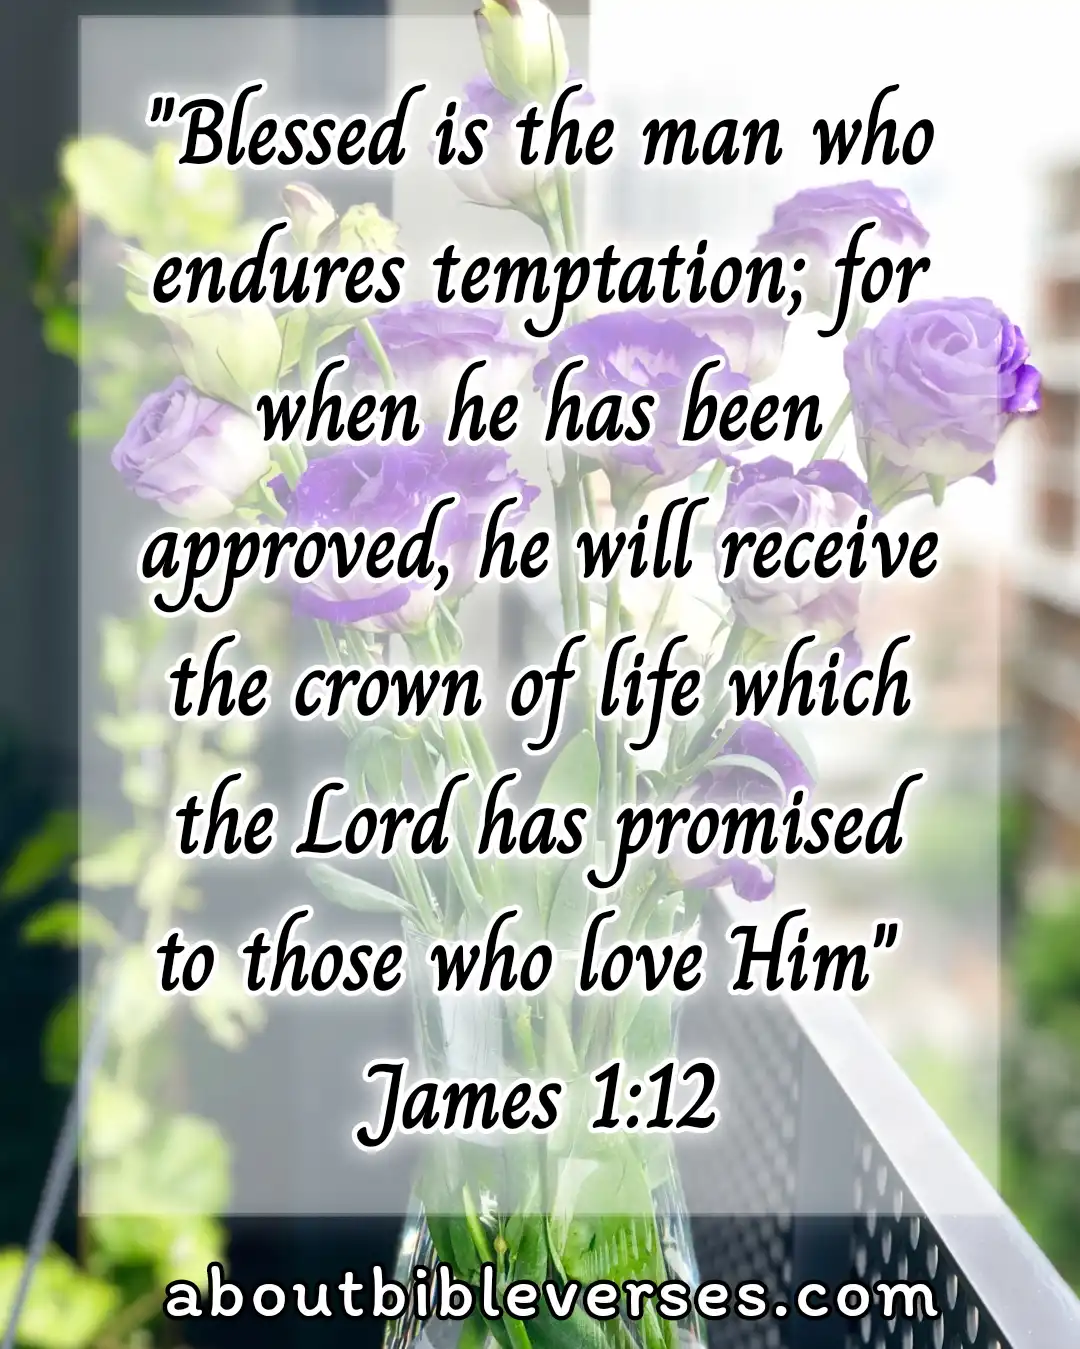 Today Bible Verse (James 1:12)